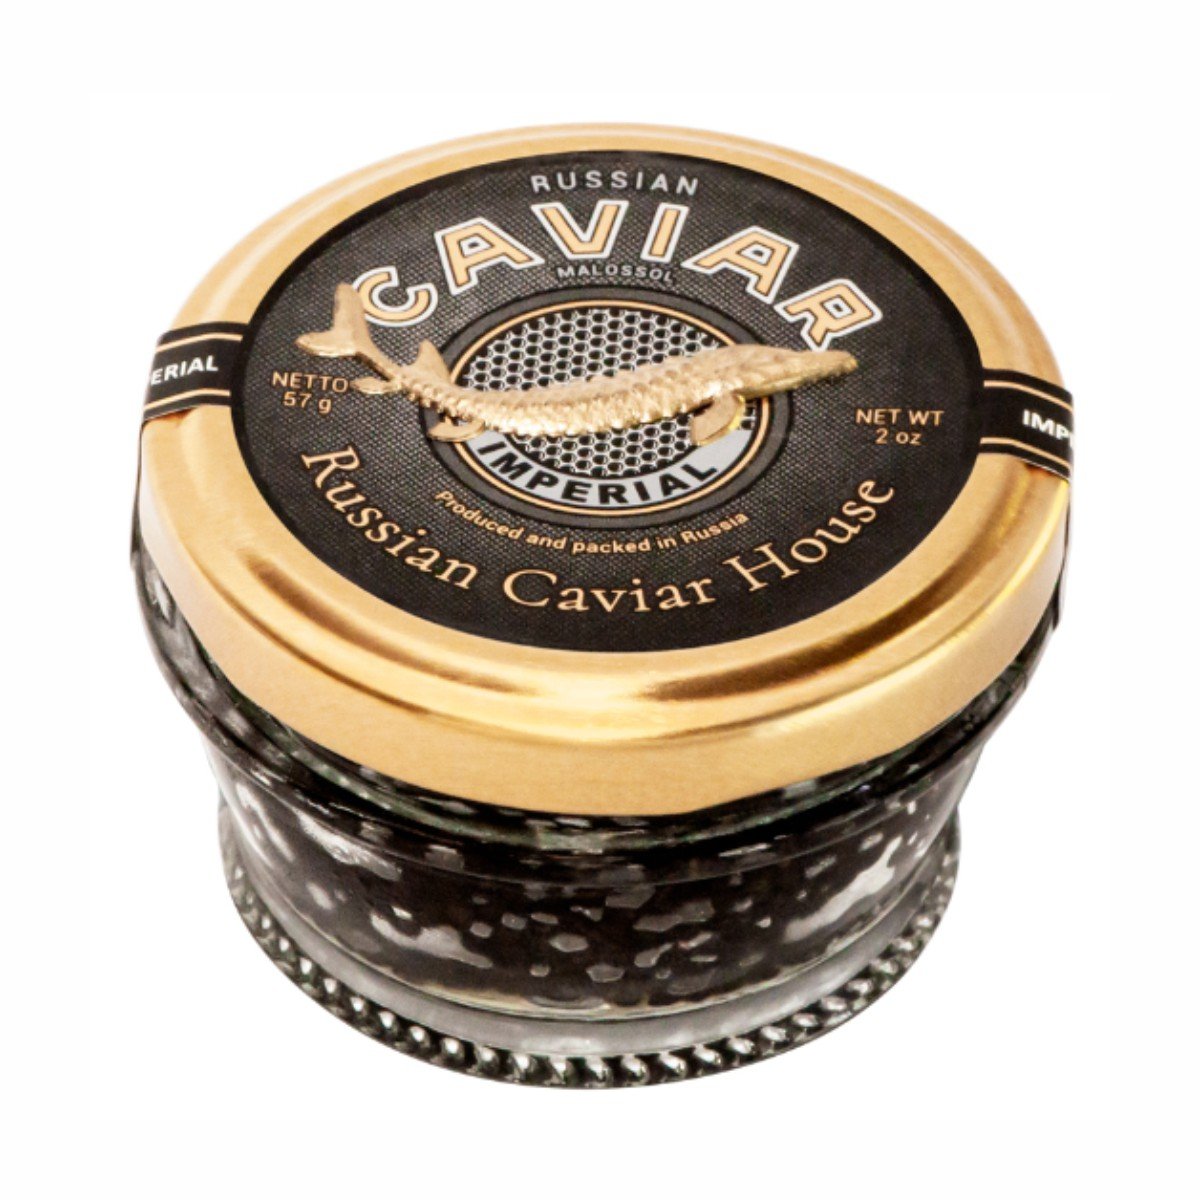 Икорный дом калининград. Икра черная осетровая Кавиар. Икра осетровая Caviar. Черная икра Caviar Imperial. Икра осетровая Caviar зернистая.